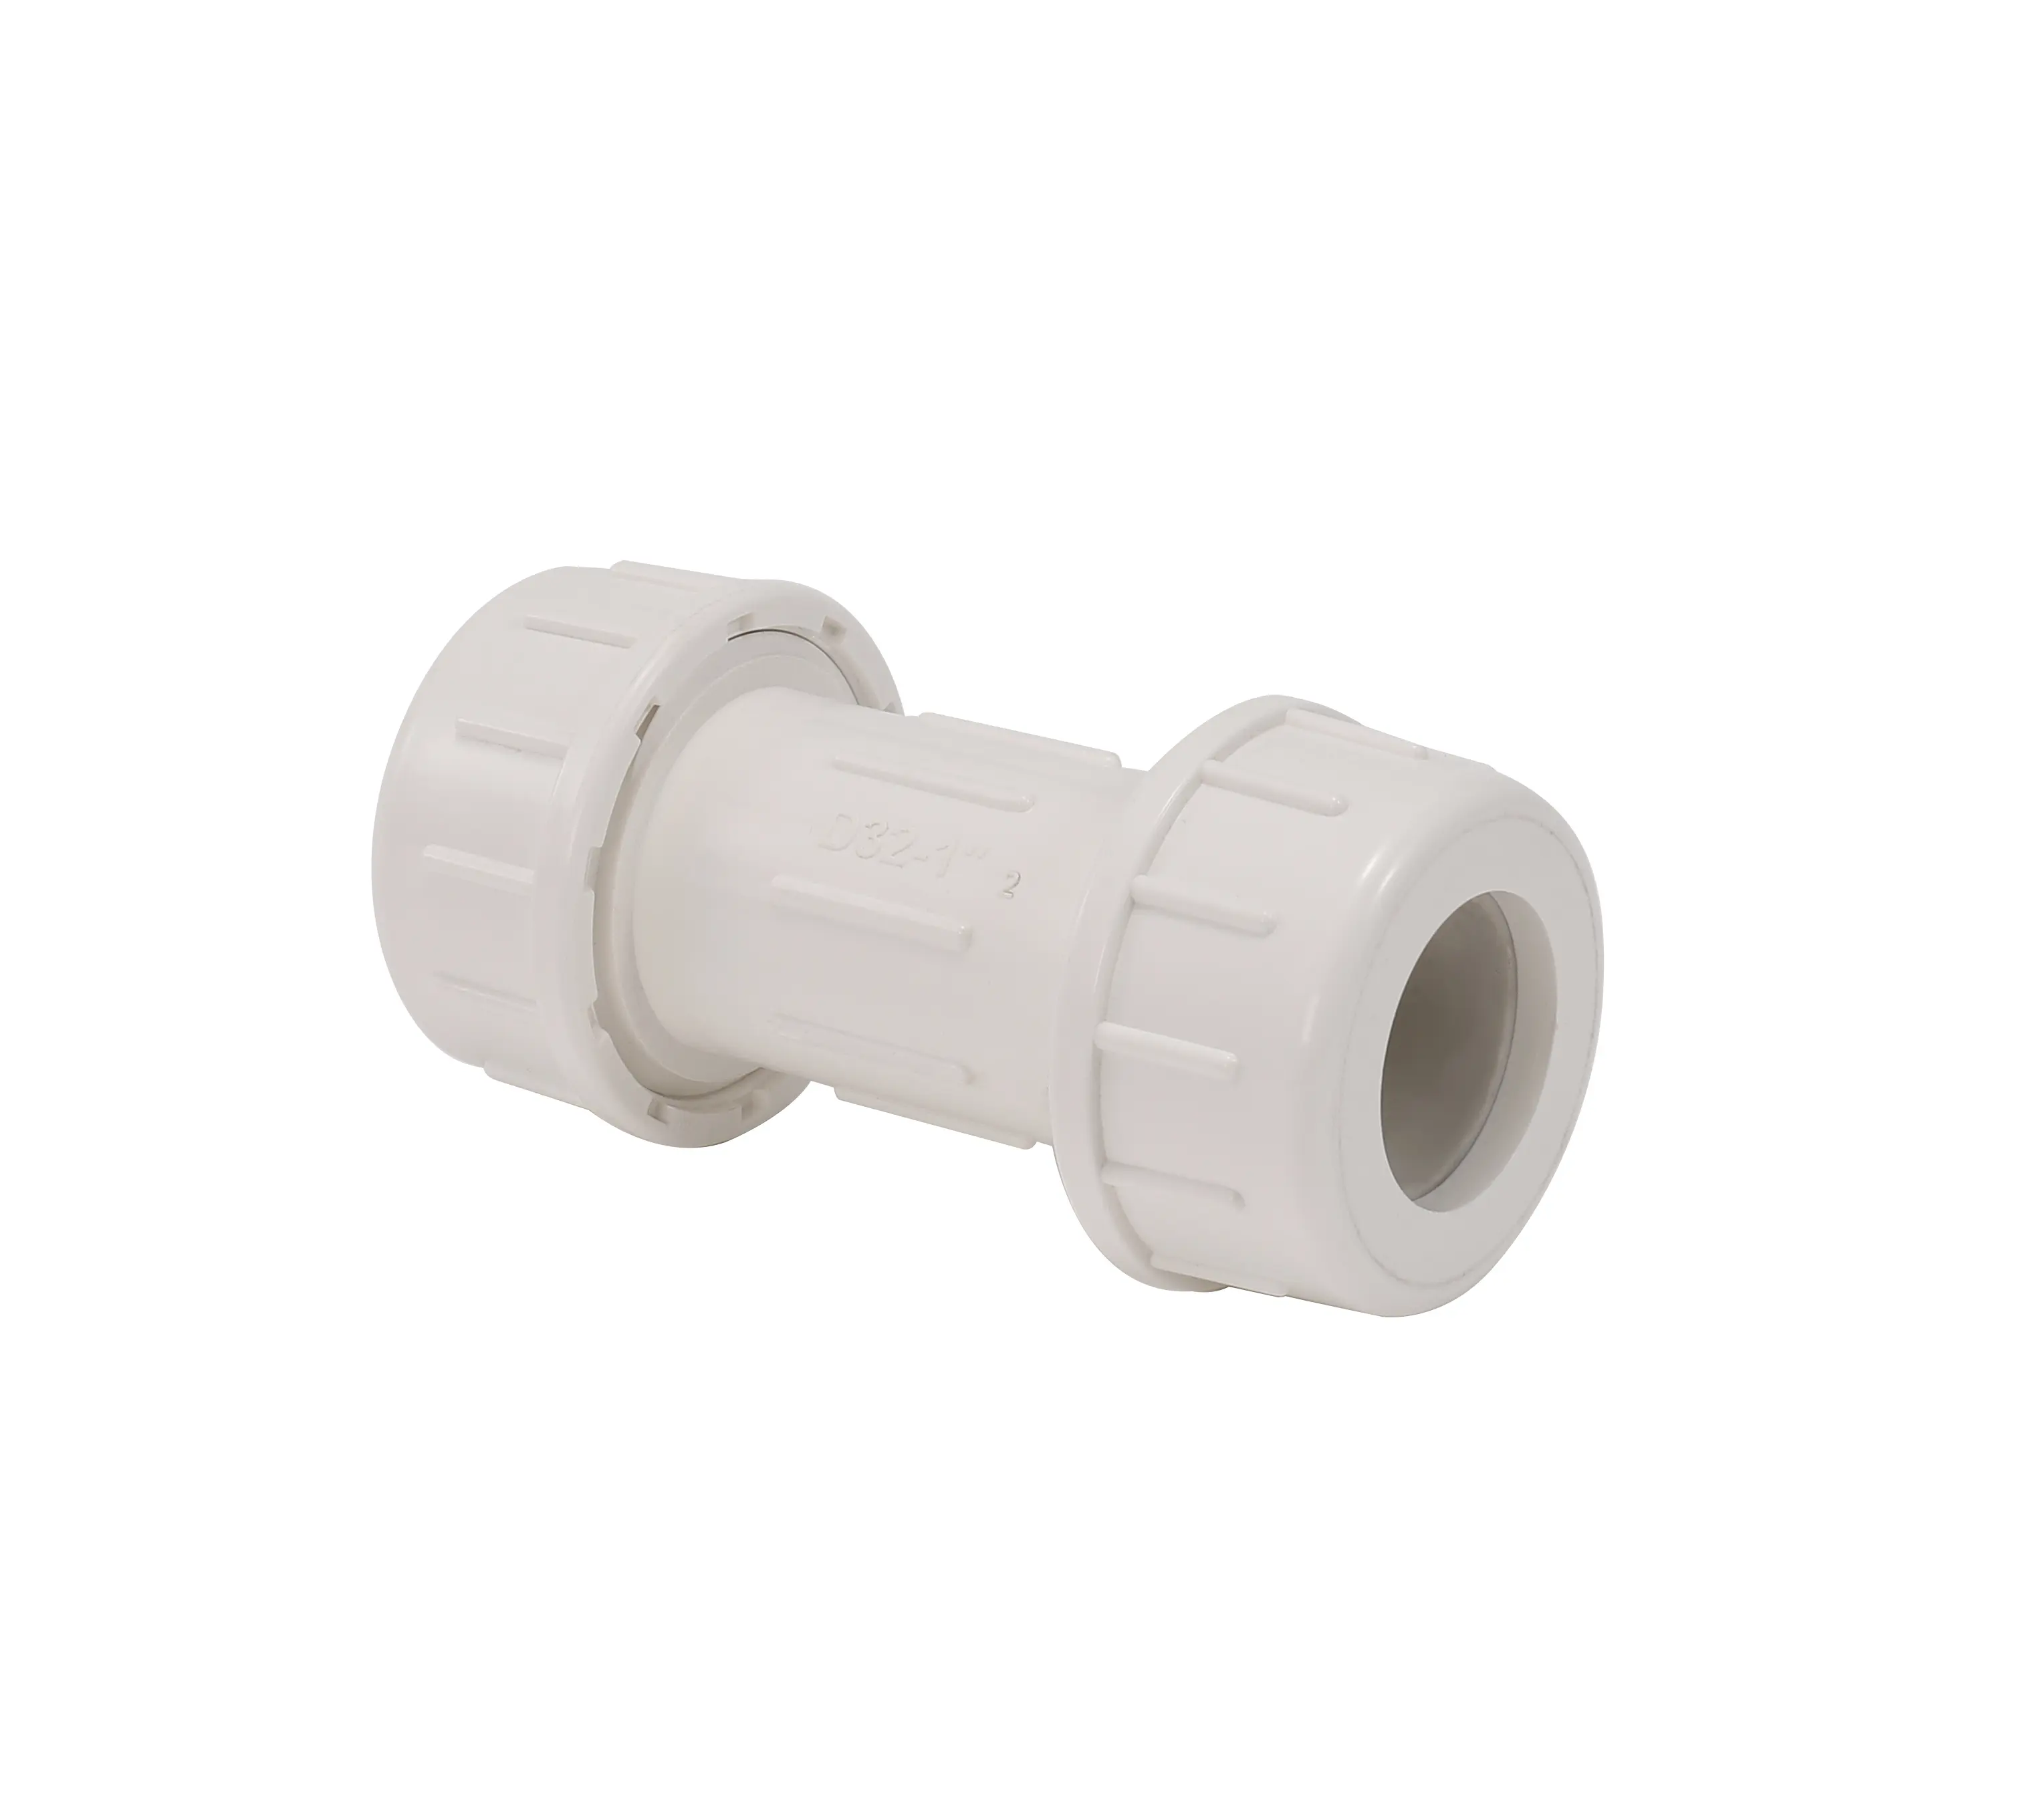 Raccord de tuyau de plomberie en PVC pour raccords de tuyauterie Fabricant chinois ANSI/DIN/JIS/BS Compression en plastique PVC de toutes tailles